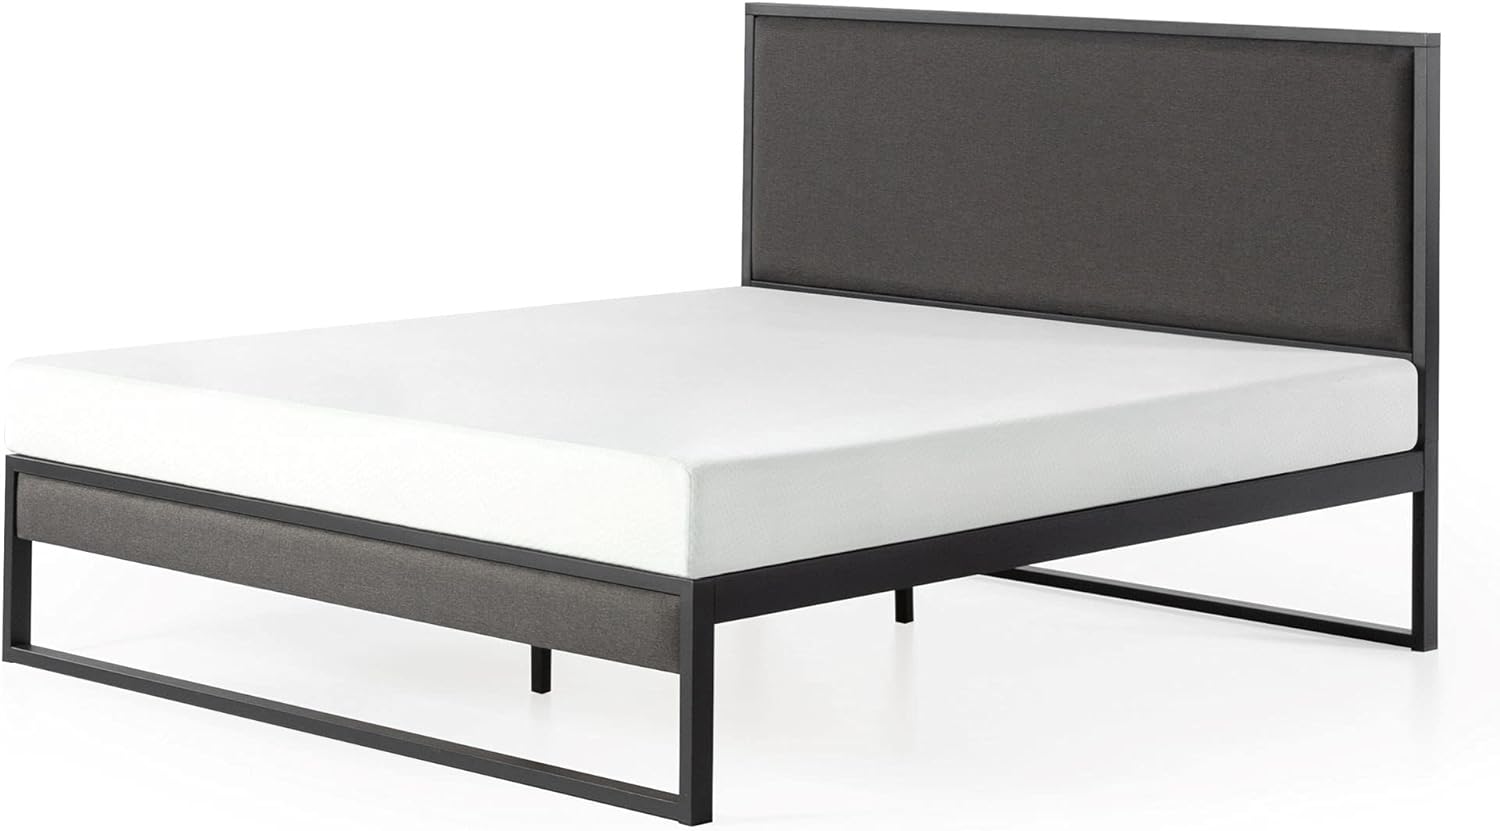 ZINUS Christina Upholstered Platform Bed Frame with Headboard, King - $190